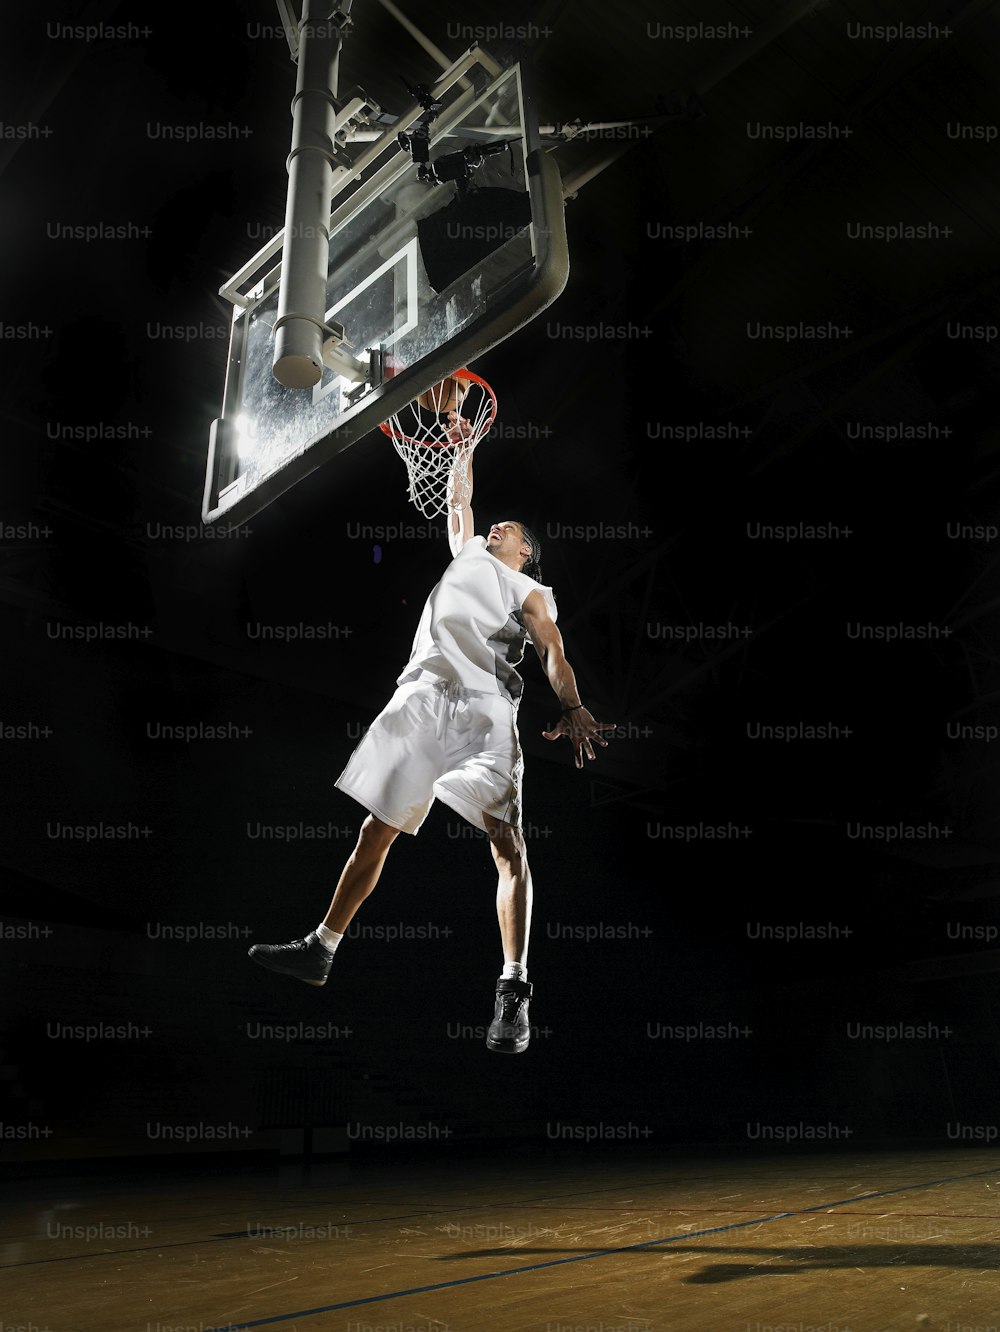 バスケットボール選手が空中に飛び上がってバスケットボールをダンクする